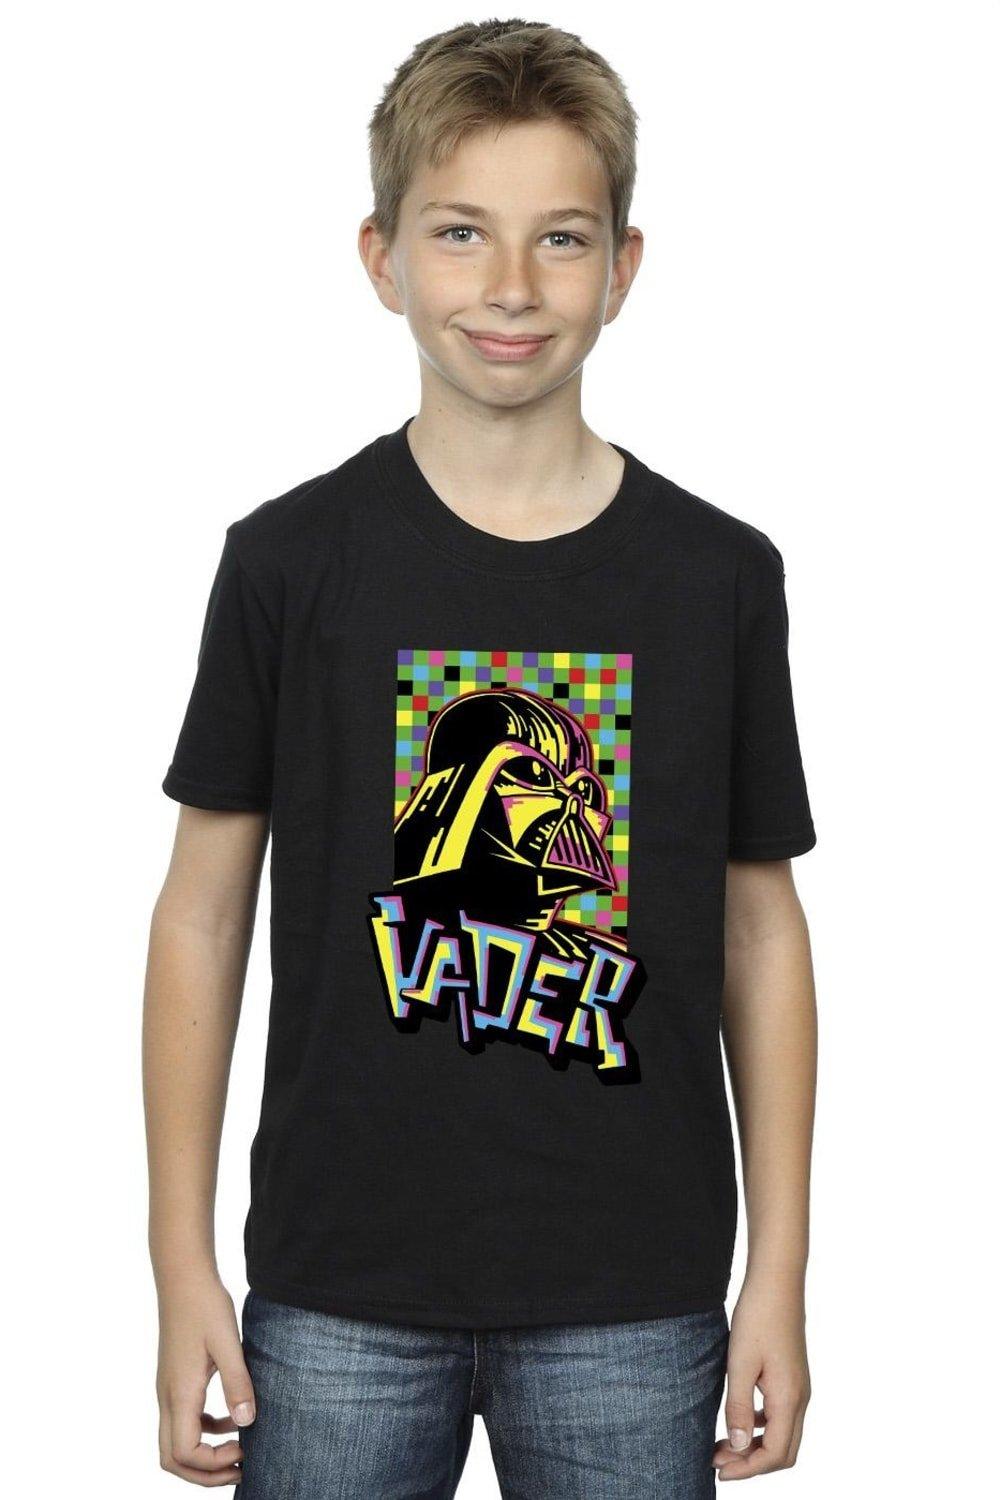 Vader Graffiti Pop Art T-Shirt